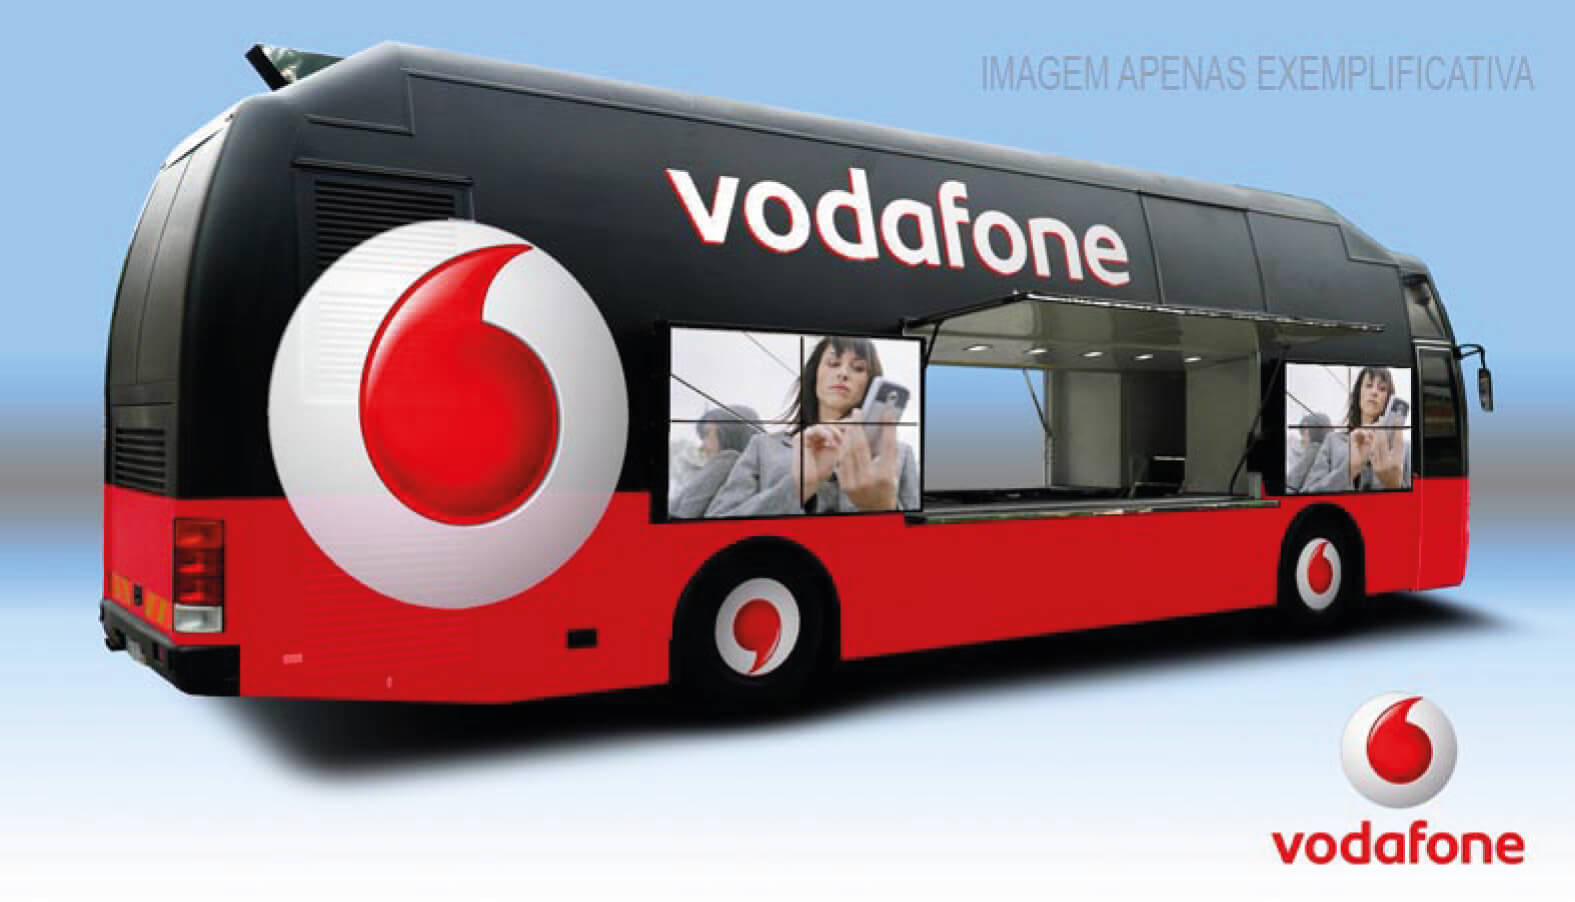 Special Bus - Activação de Marca - Vodafone - Eventos Empresariais - Eventos Corporativos - Eventos sobre rodas - Aluguer de Autocarros - EventsPortugal